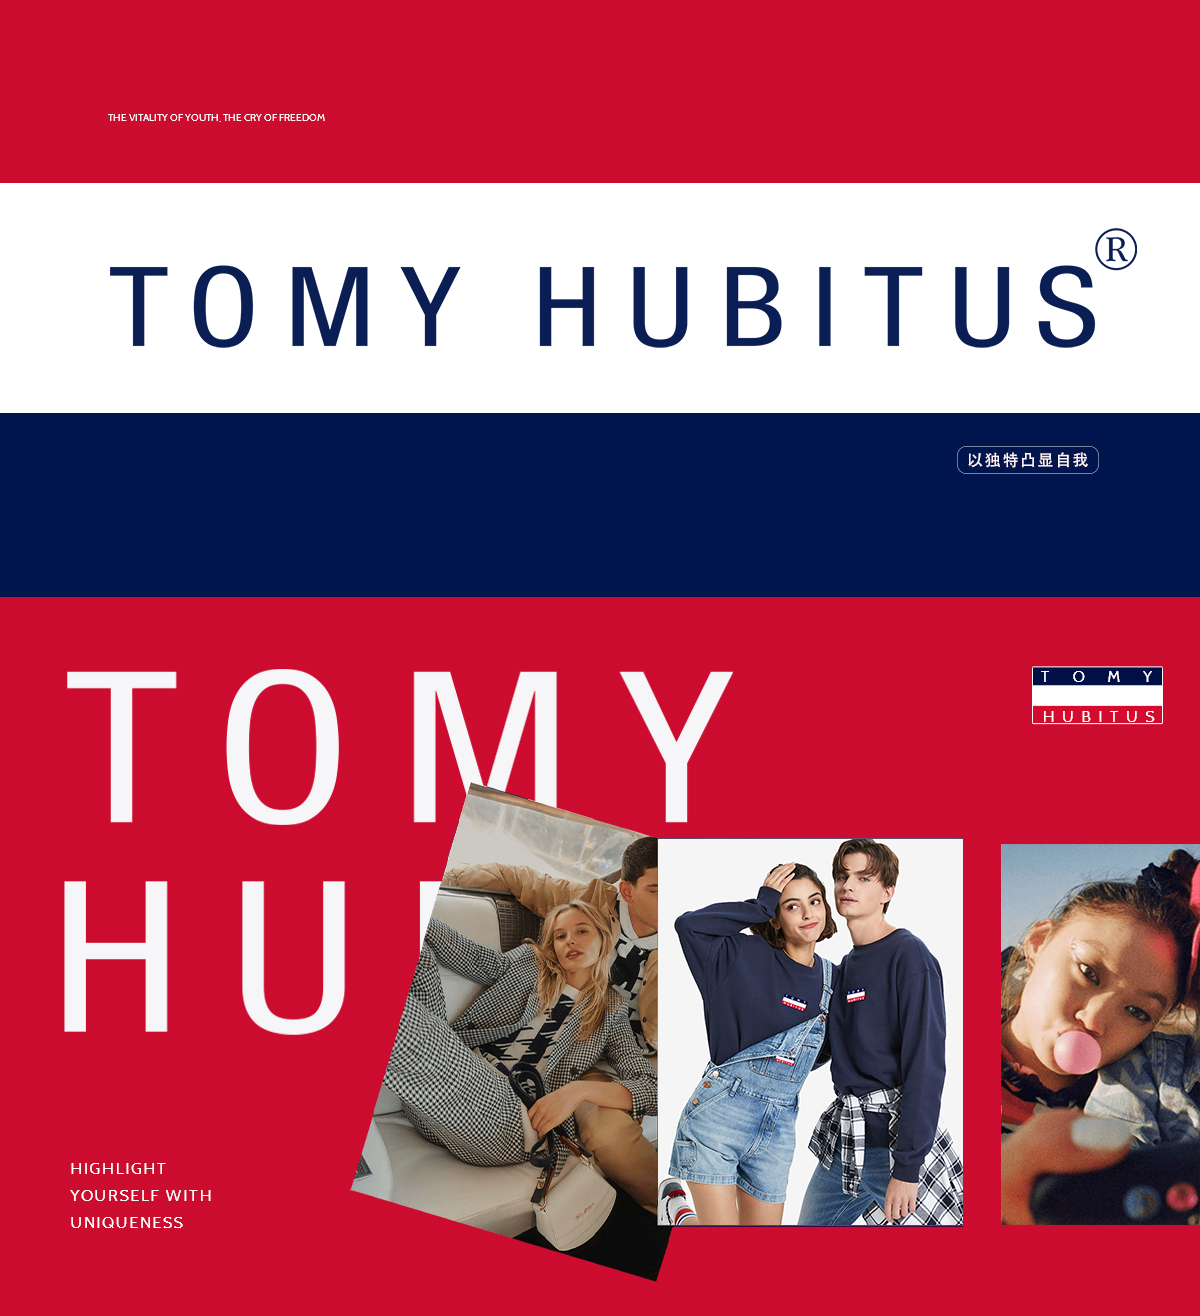 TOMY HUBITUS